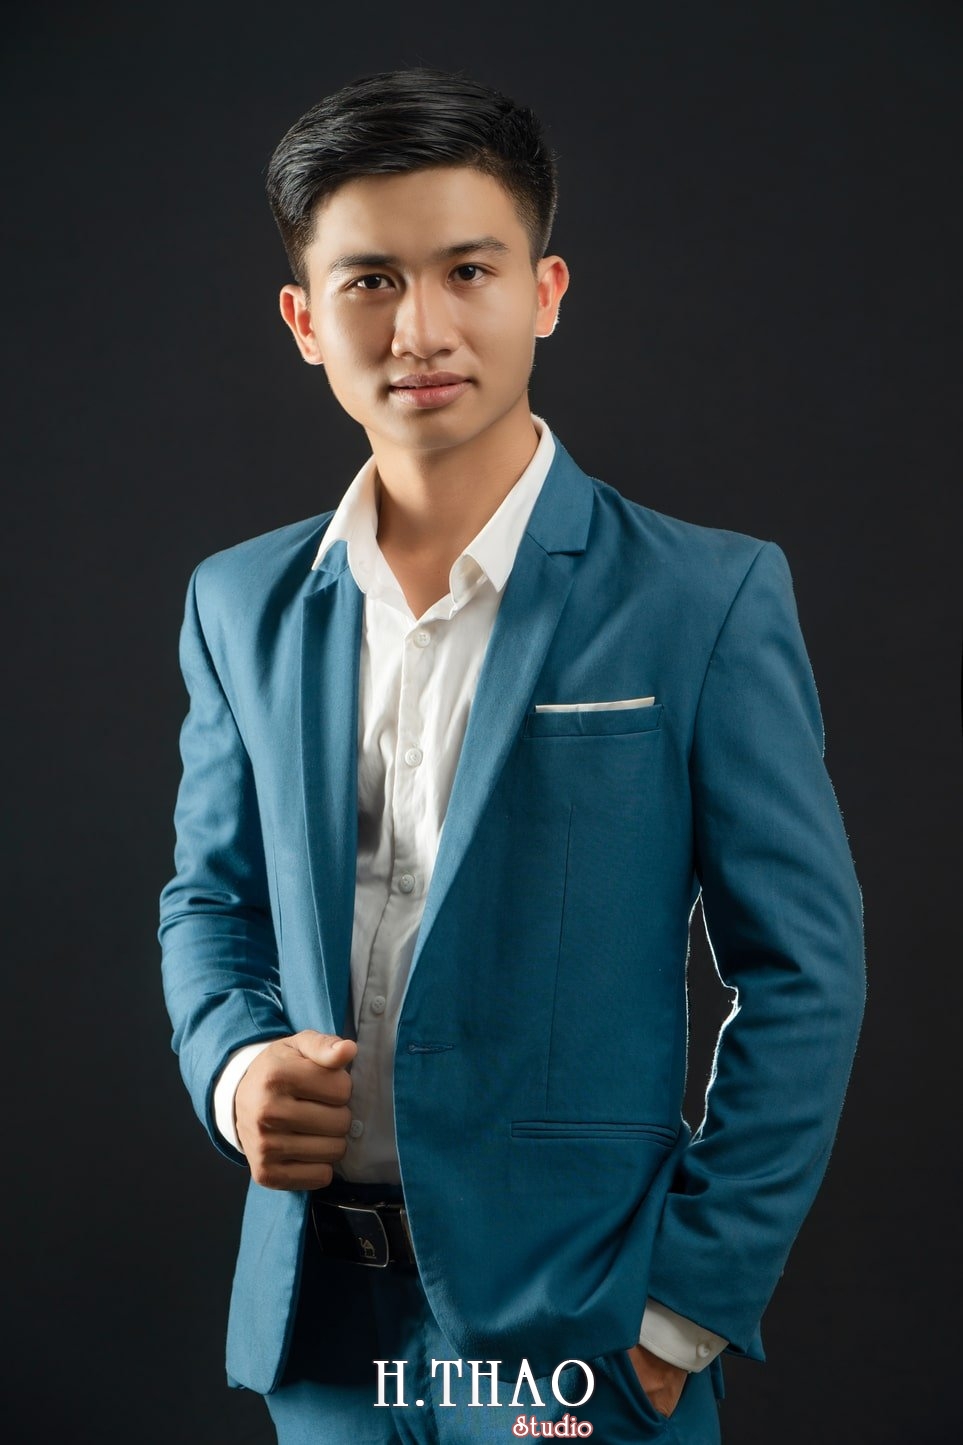 Anh Doanh Nhan 31 - Studio chụp ảnh profile cá nhân chuyên nghiệp ở Tp.HCM- HThao Studio